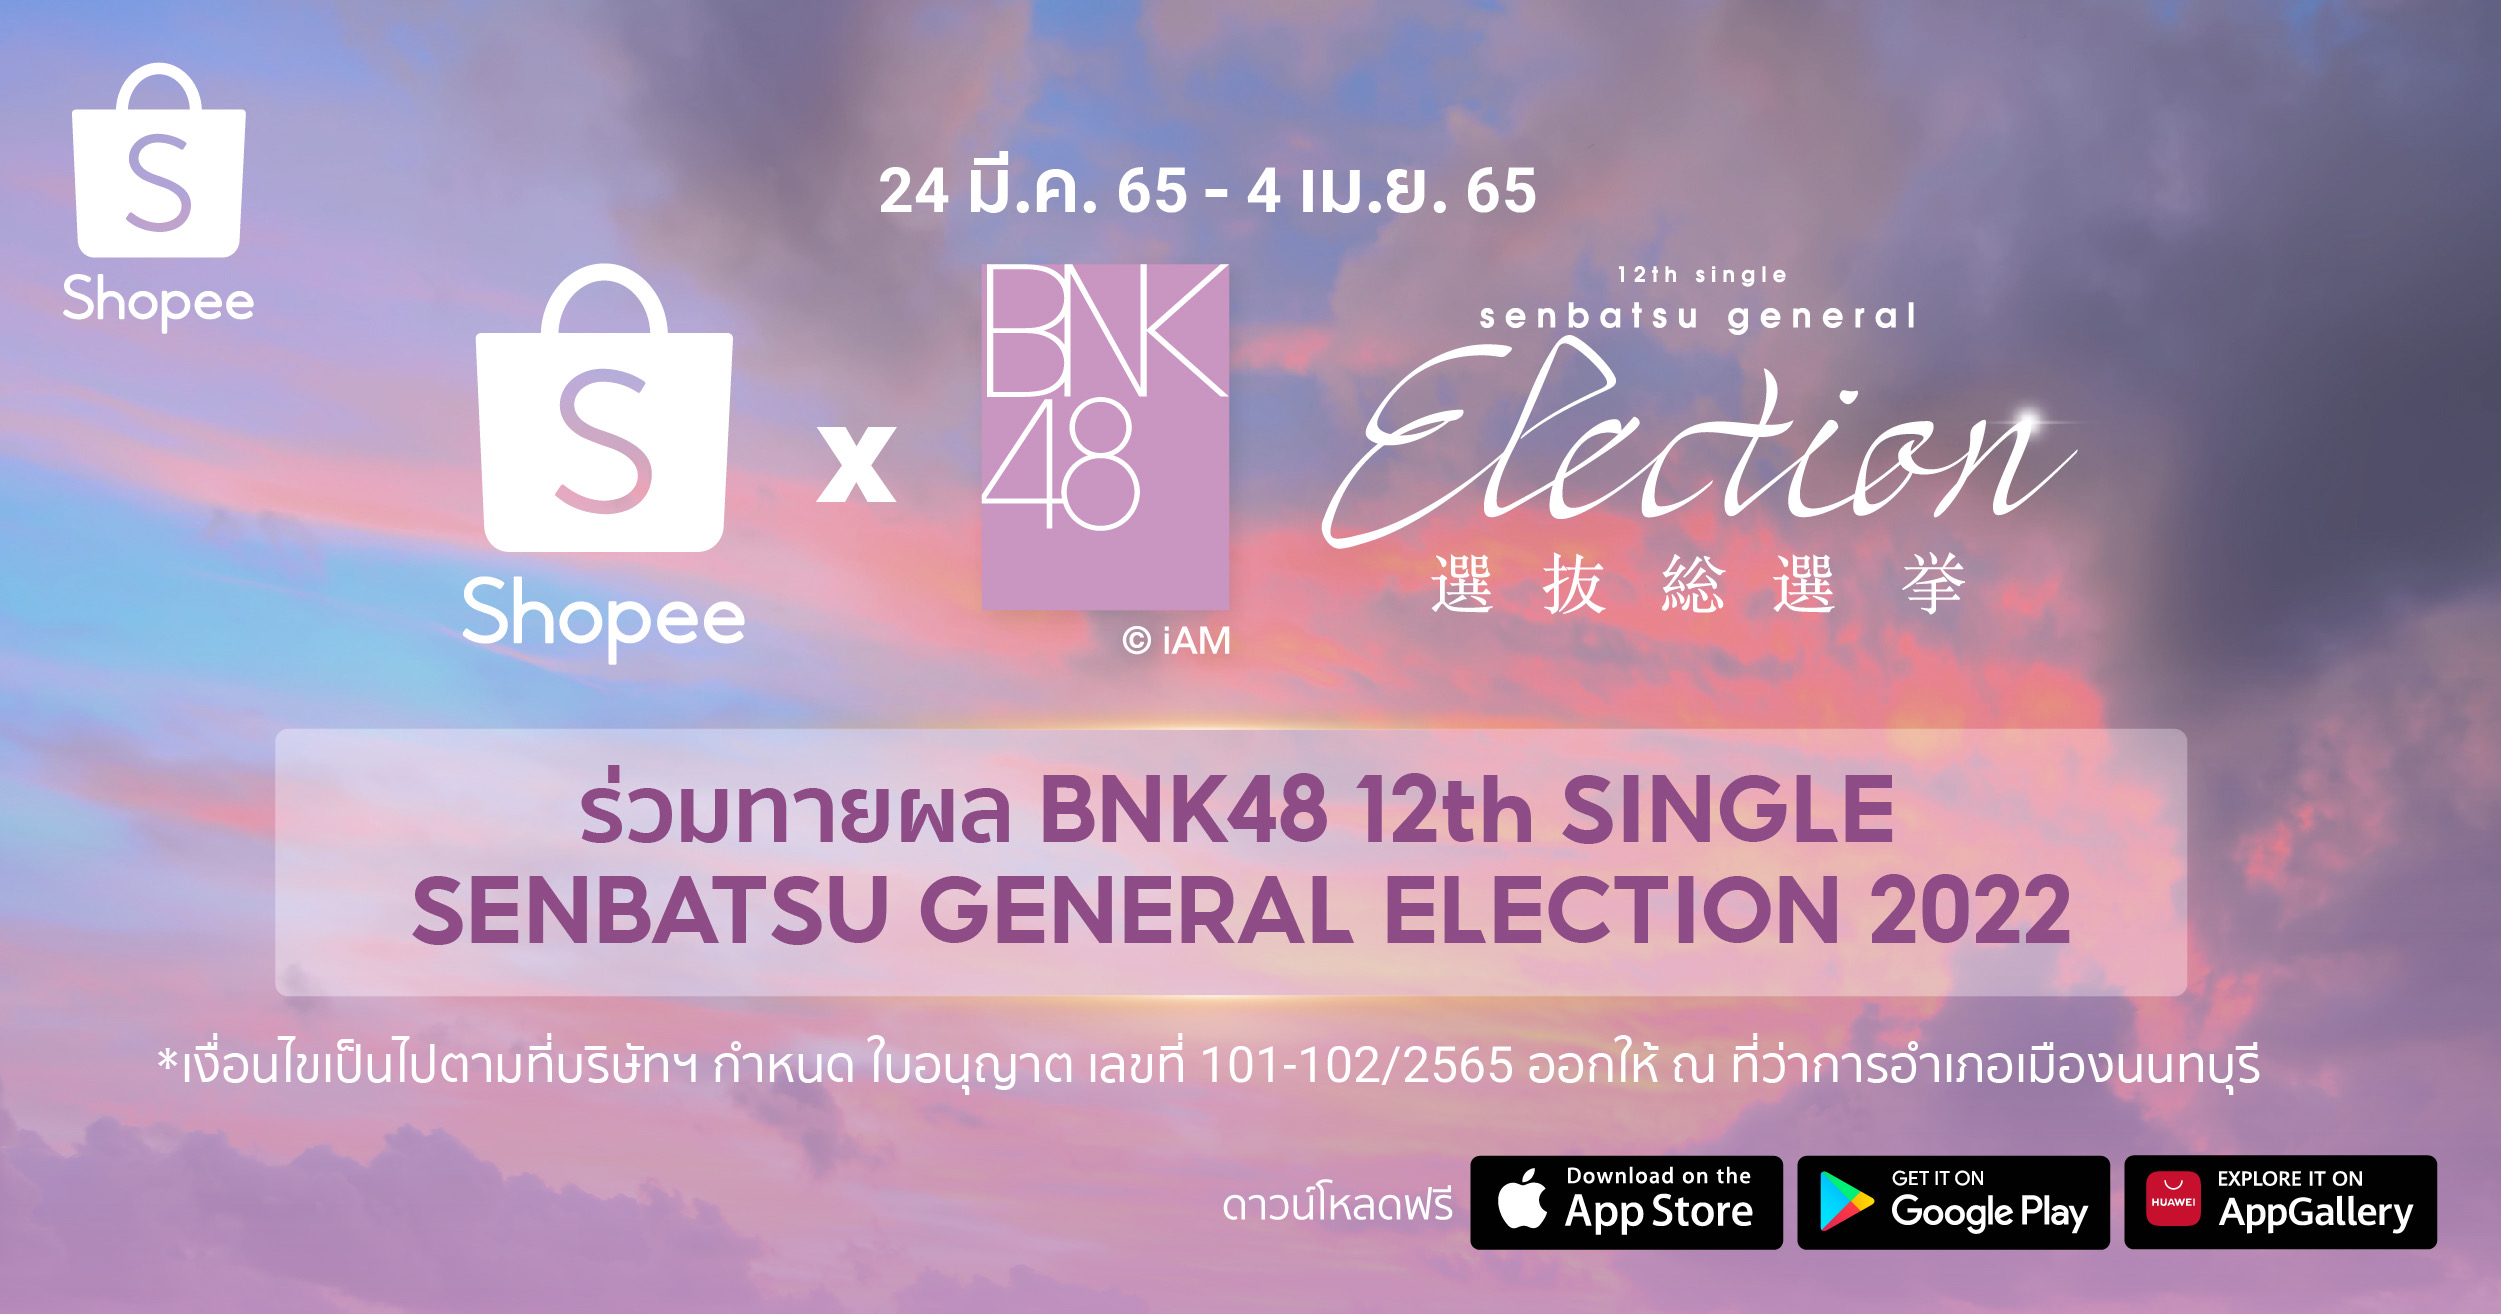 ช้อปปี้ และ BNK48 จัดกิจกรรมสุดเอ็กซ์คลูซีฟ “Shopee x BNK48 ร่วมทายผล BNK48 12th Single Senbatsu General Election”ชวนแฟนๆ ร่วมทายผลเซ็นเตอร์และเซมบัตสึในซิงเกิลหลักที่ 12 เพื่อชิงรางวัลใหญ่บัตรวีไอพี ในงานแกรนด์โอเพนนิ่ง และอื่นๆ มากมาย